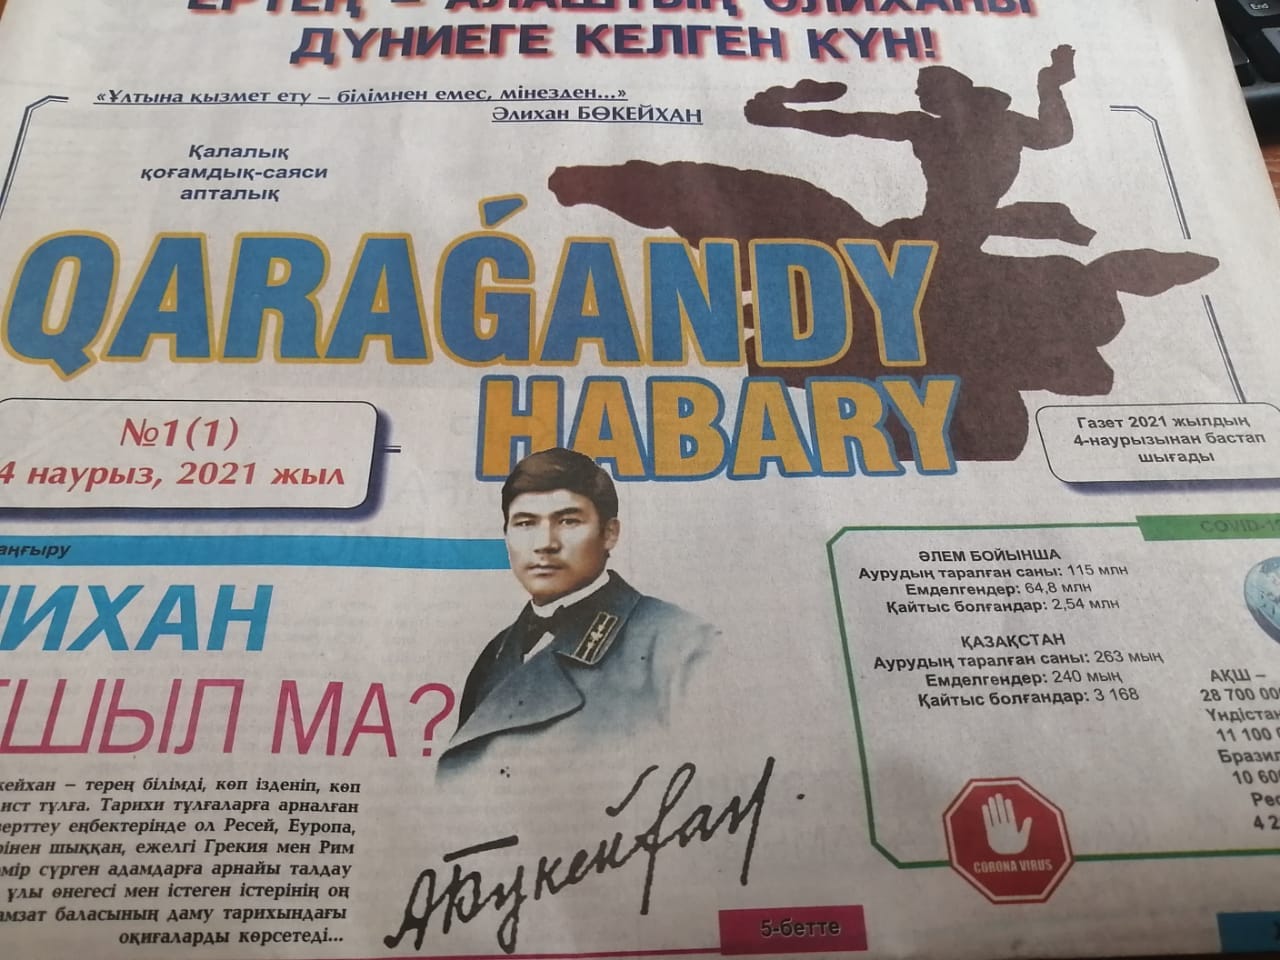 Қарағандыда қазақ тіліндегі қалалық газет шығарыла бастады